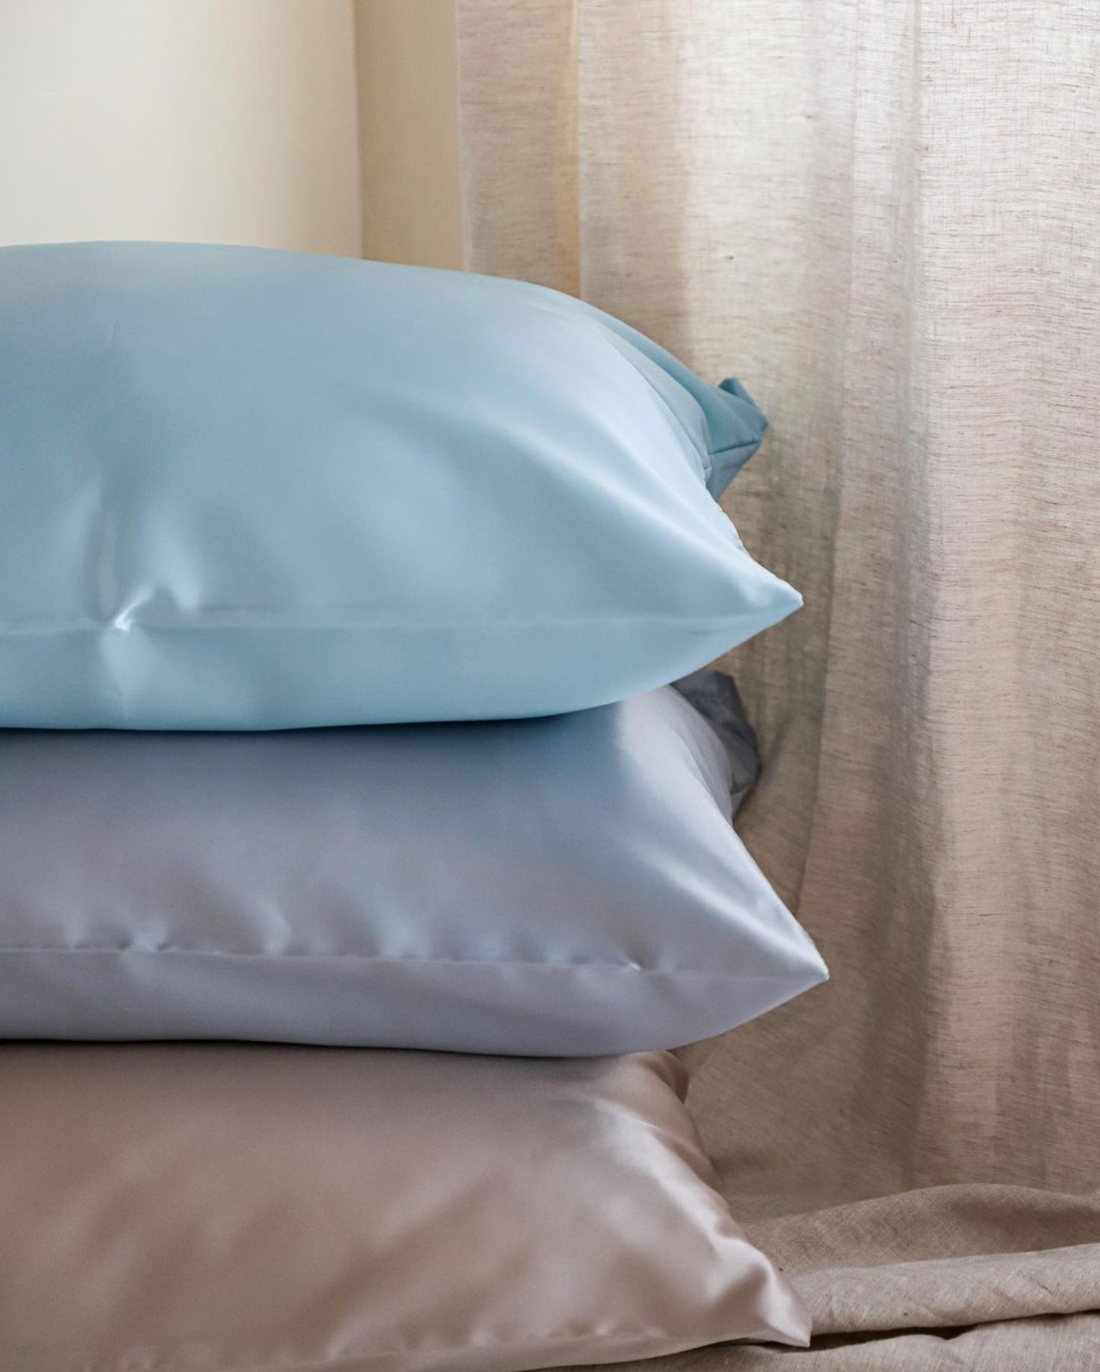 Slaap je mooi met de satijnen kussenslopen van Beauty Pillow!